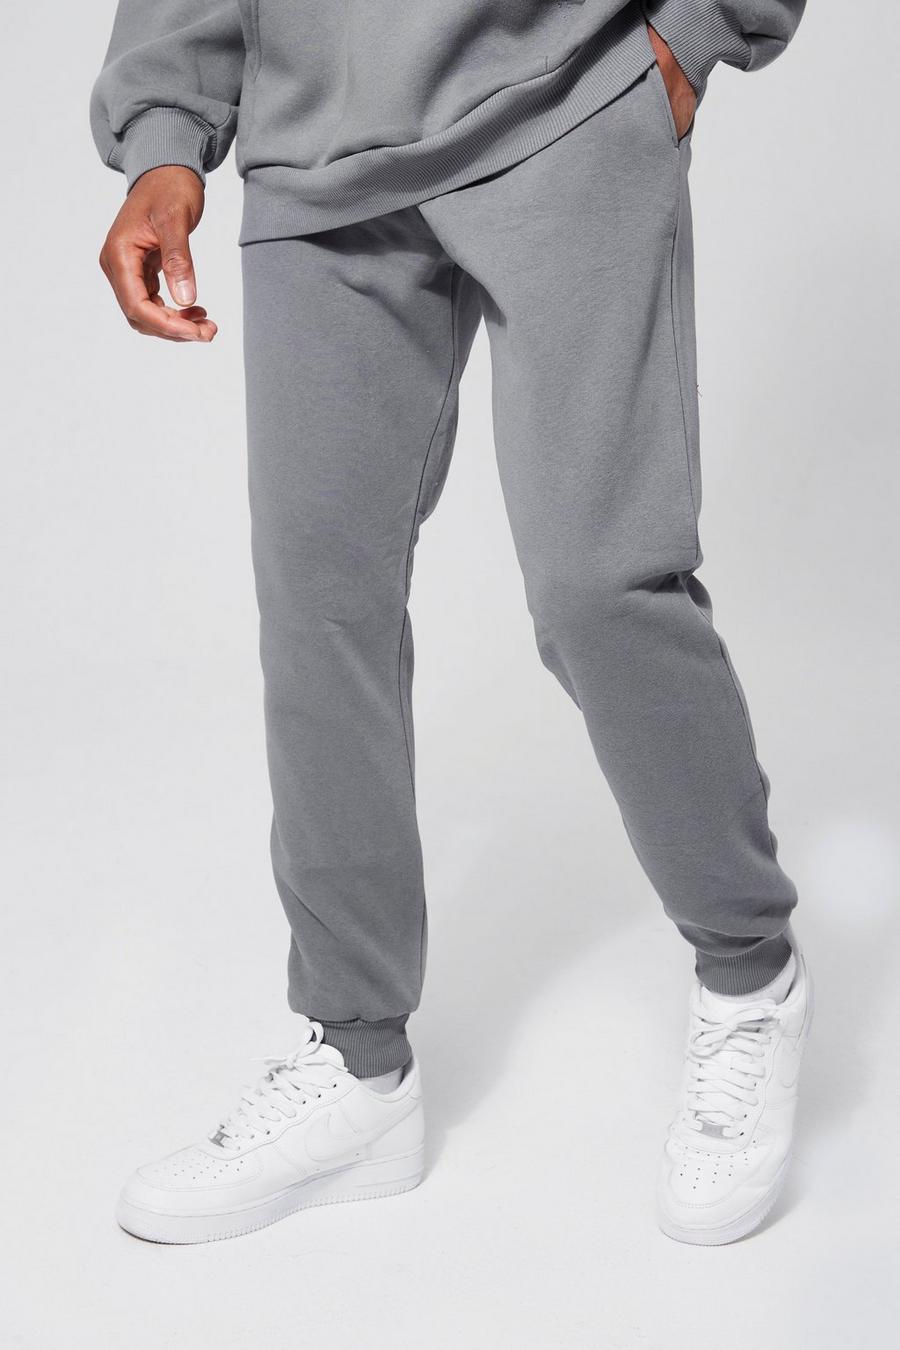 Pantalón deportivo básico pitillo, Charcoal grigio